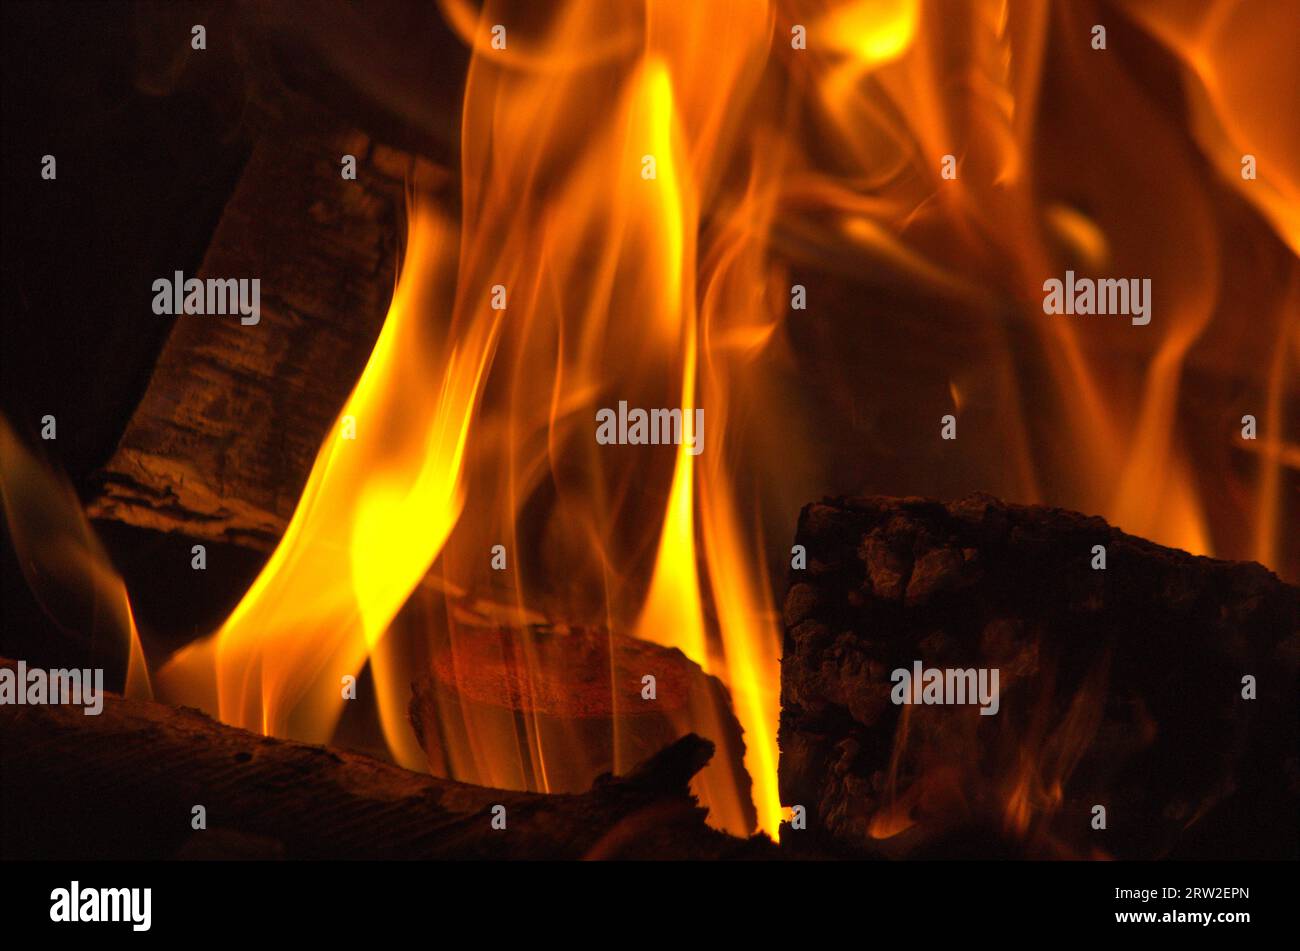 dettaglio della fiamma di un caminetto acceso Stockfoto